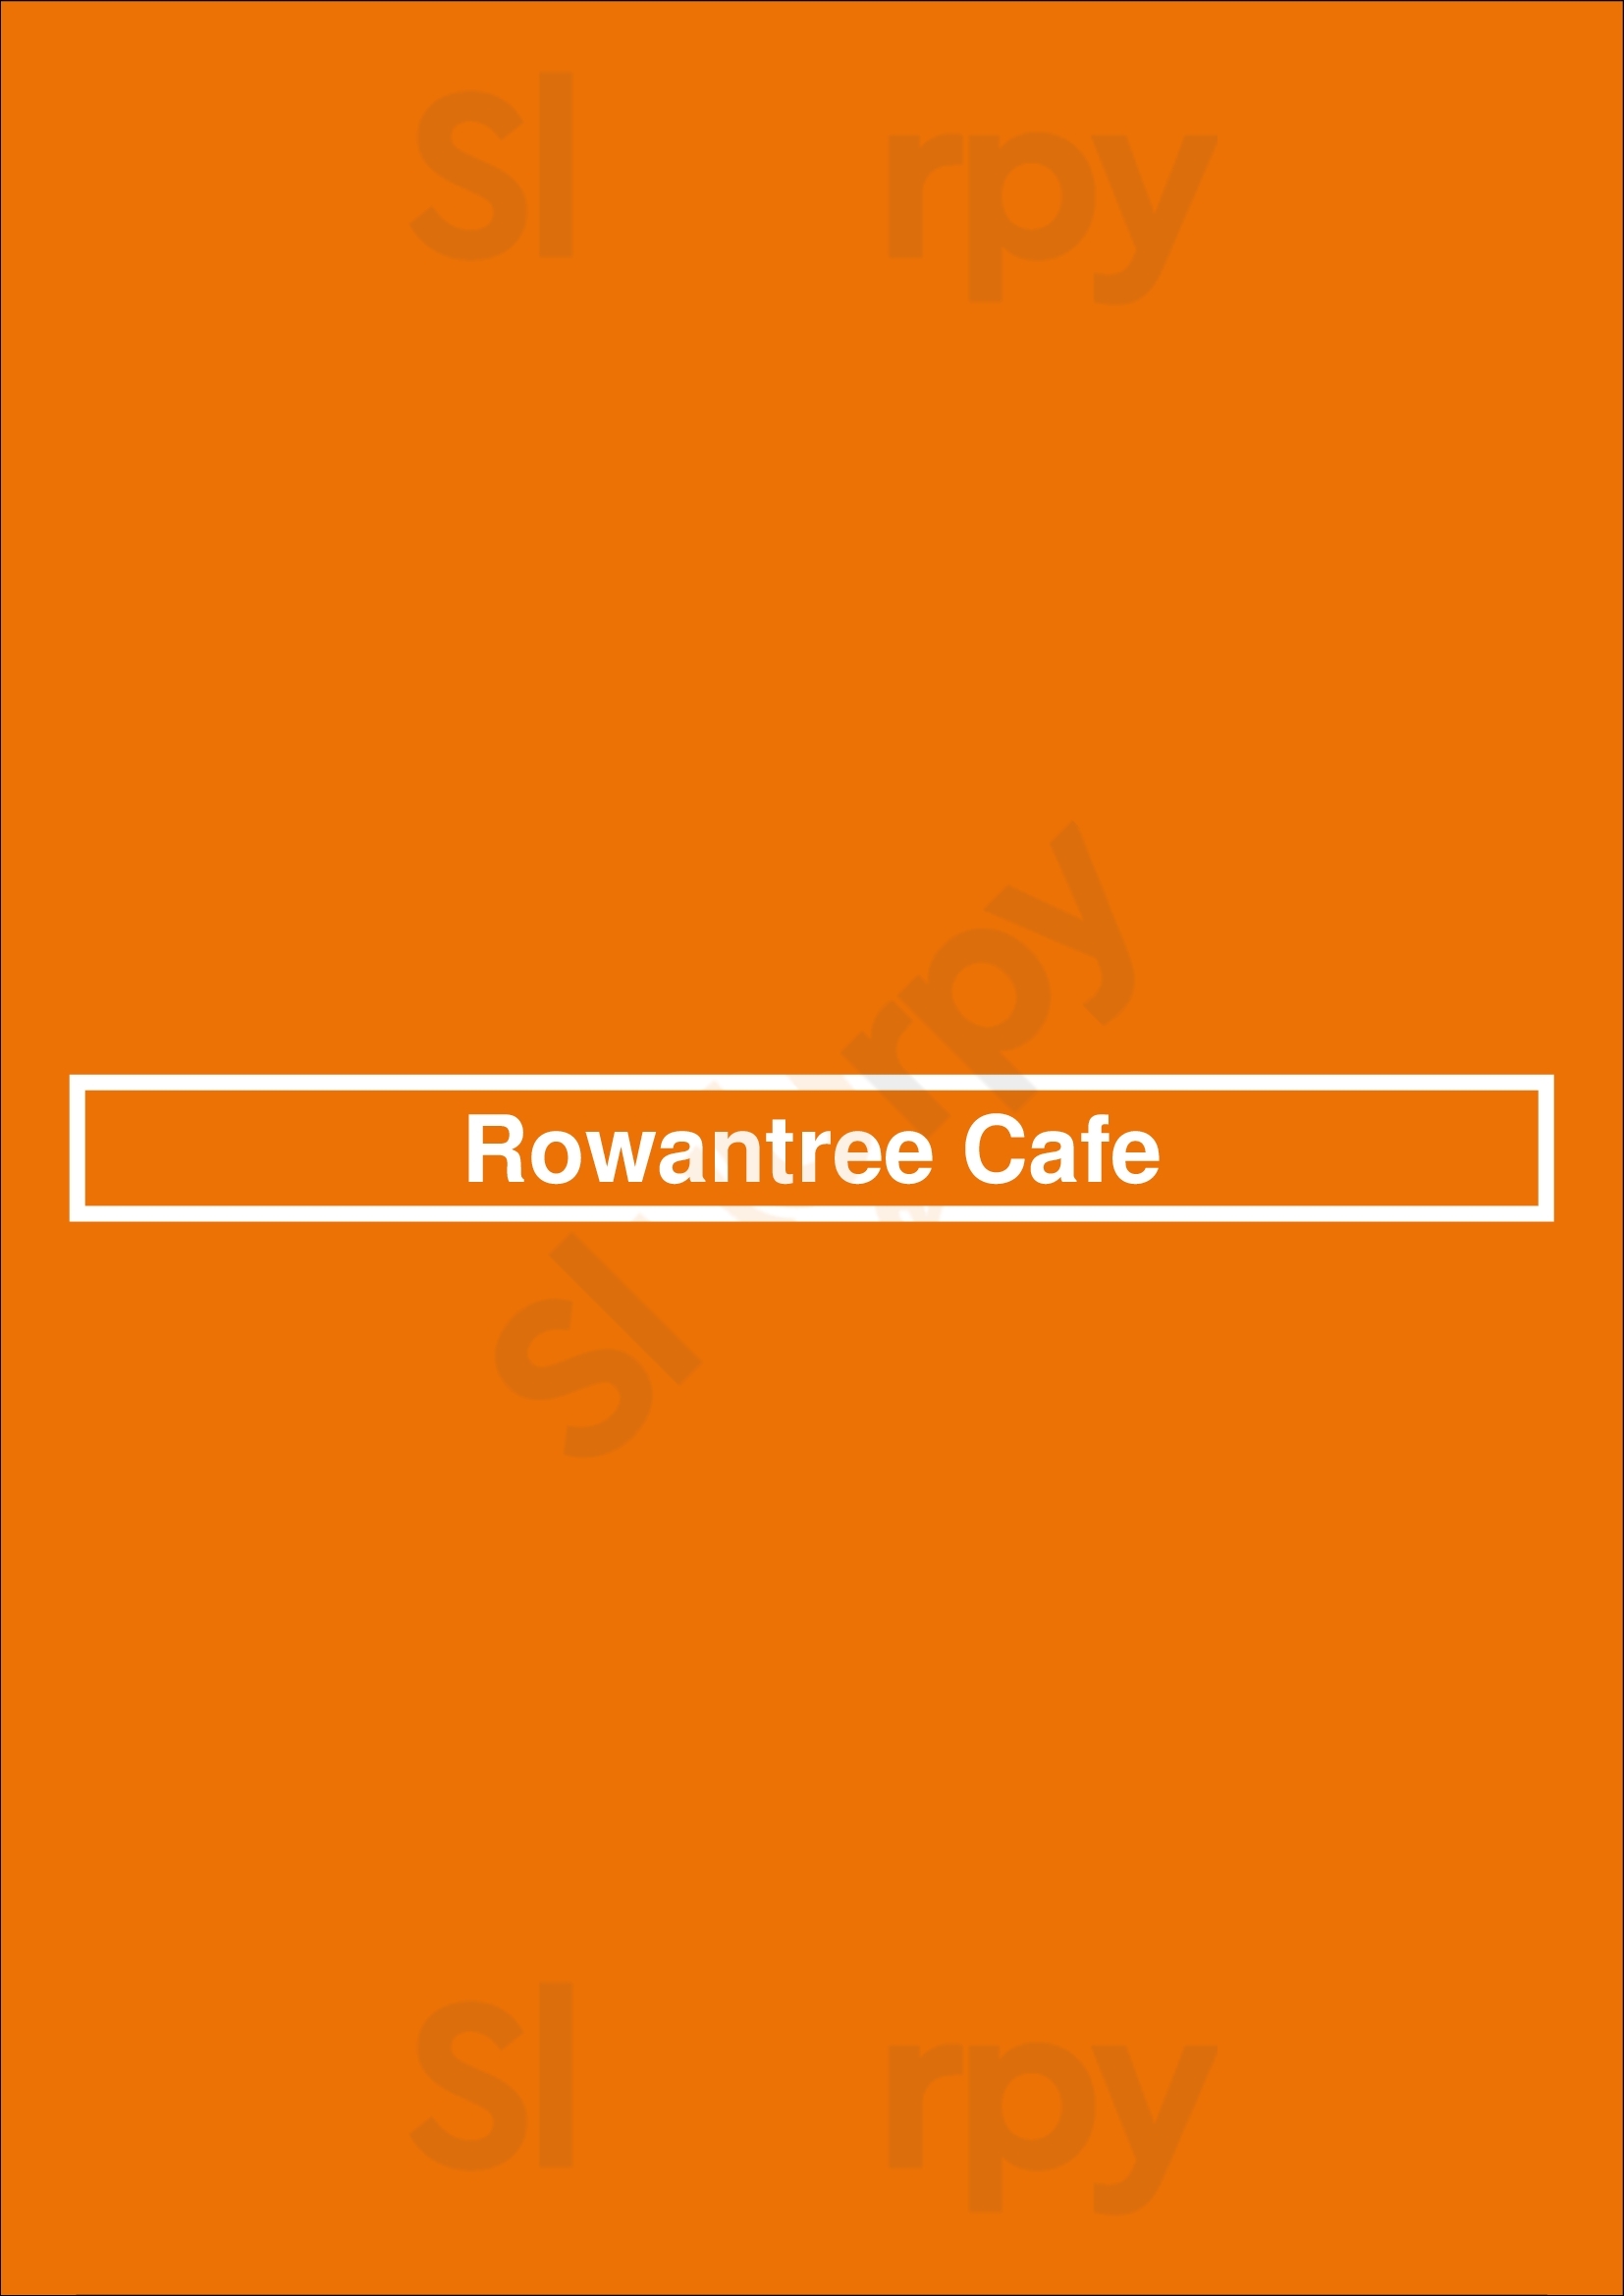 Rowantree Cafe Paisley Menu - 1